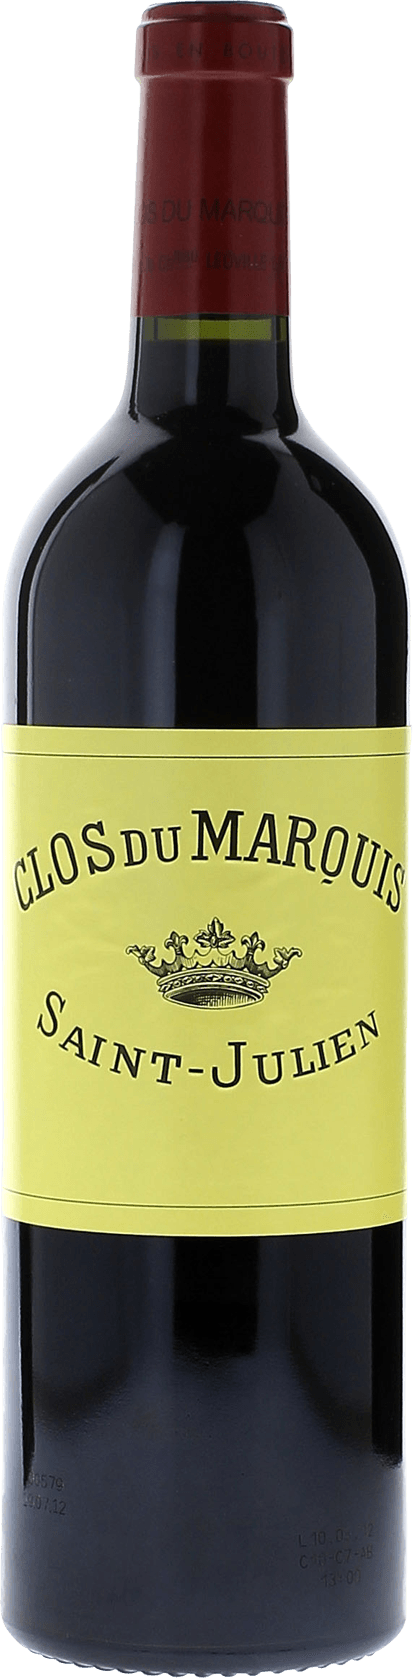 Clos du marquis 1989 2me vin de LEOVILLE LAS CASES Saint-Julien, Bordeaux rouge